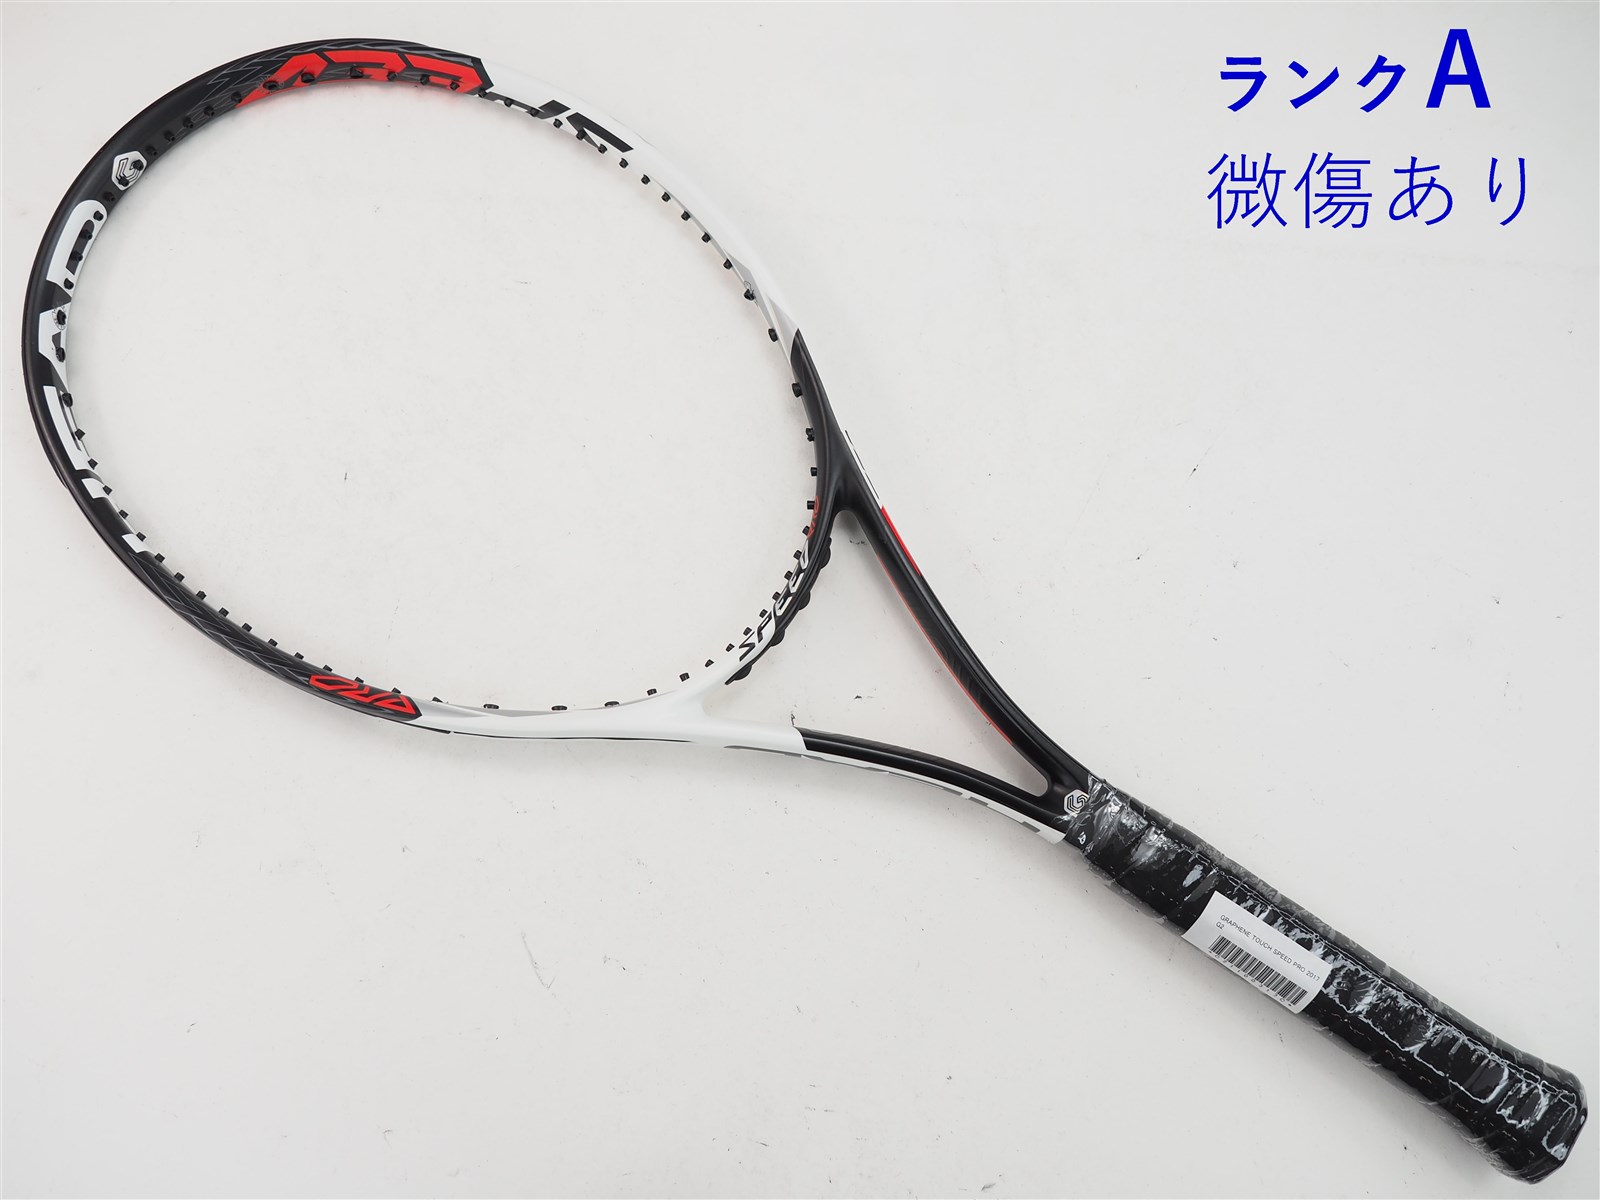 テニスラケット ヘッド グラフィン 360 スピード エス 2018年モデル (G2)HEAD GRAPHENE 360 SPEED S 2018